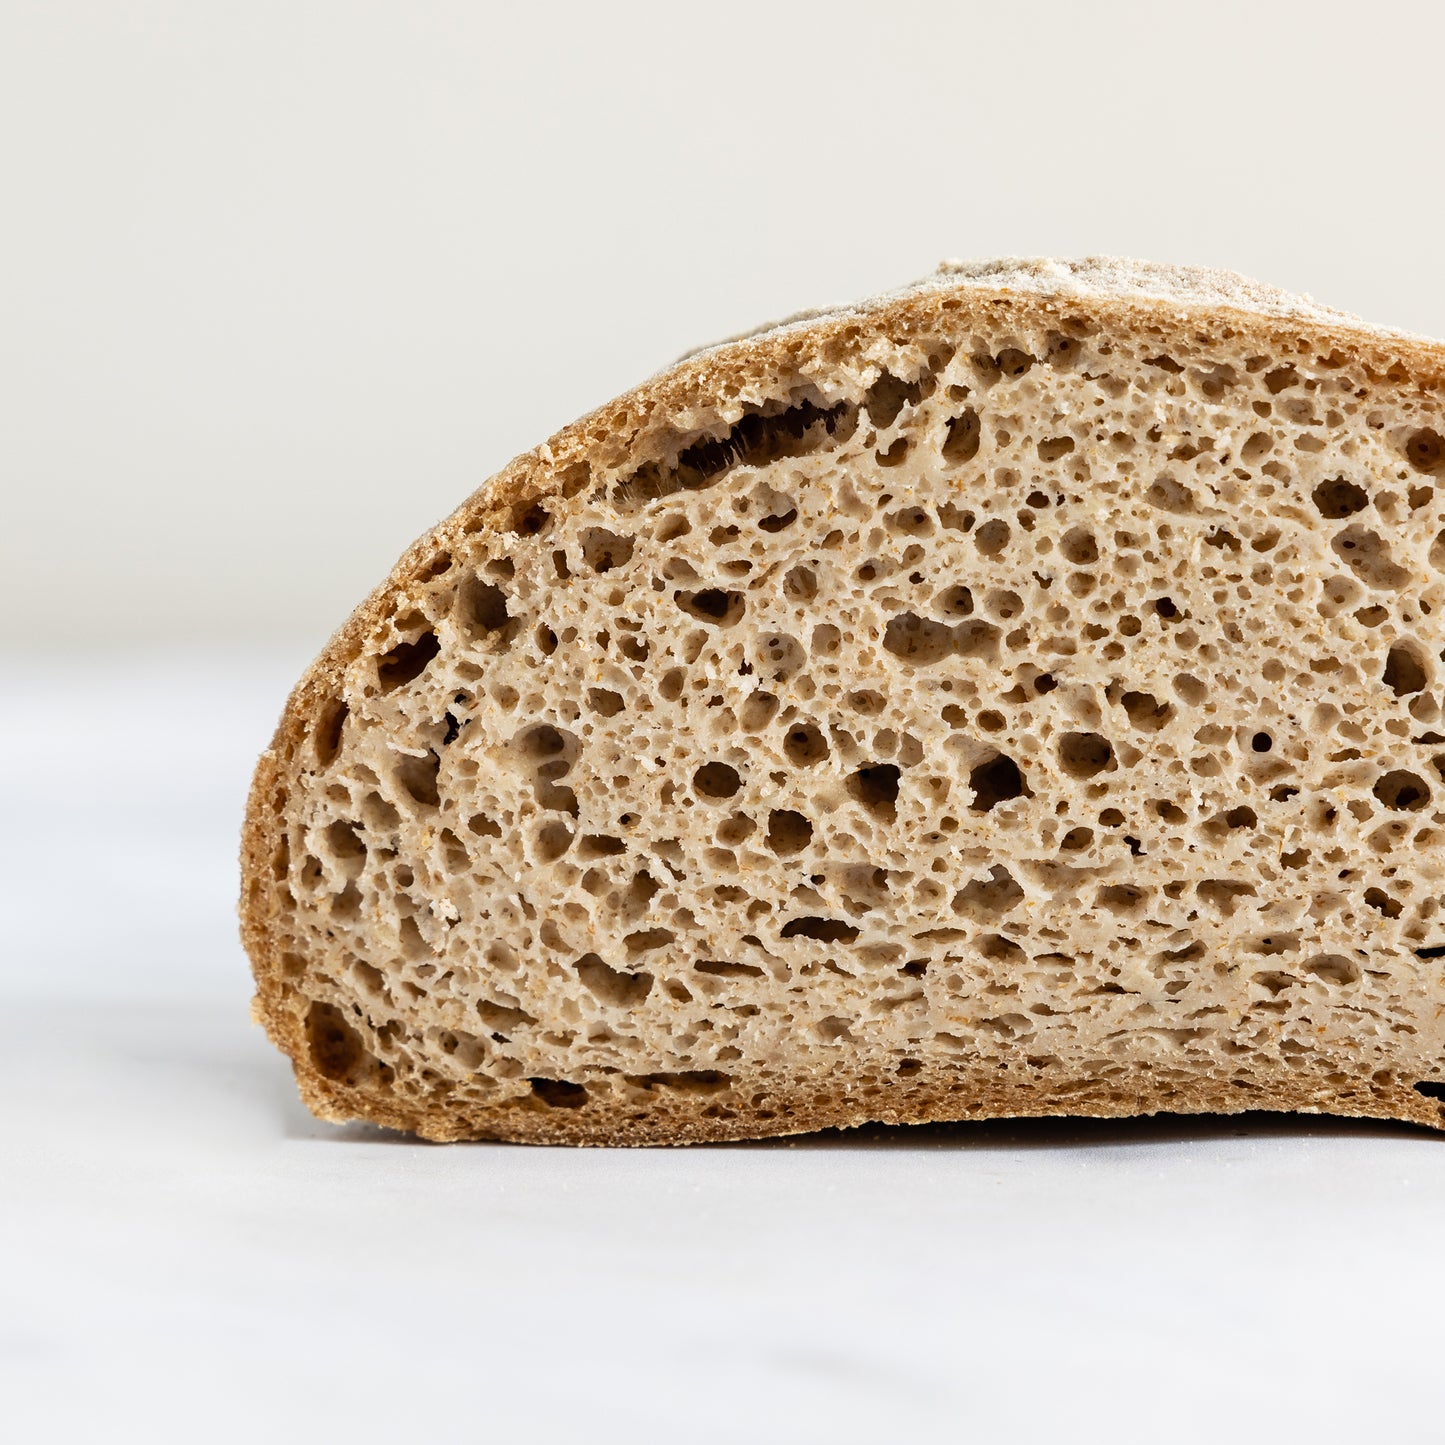 Millet sourdough bread